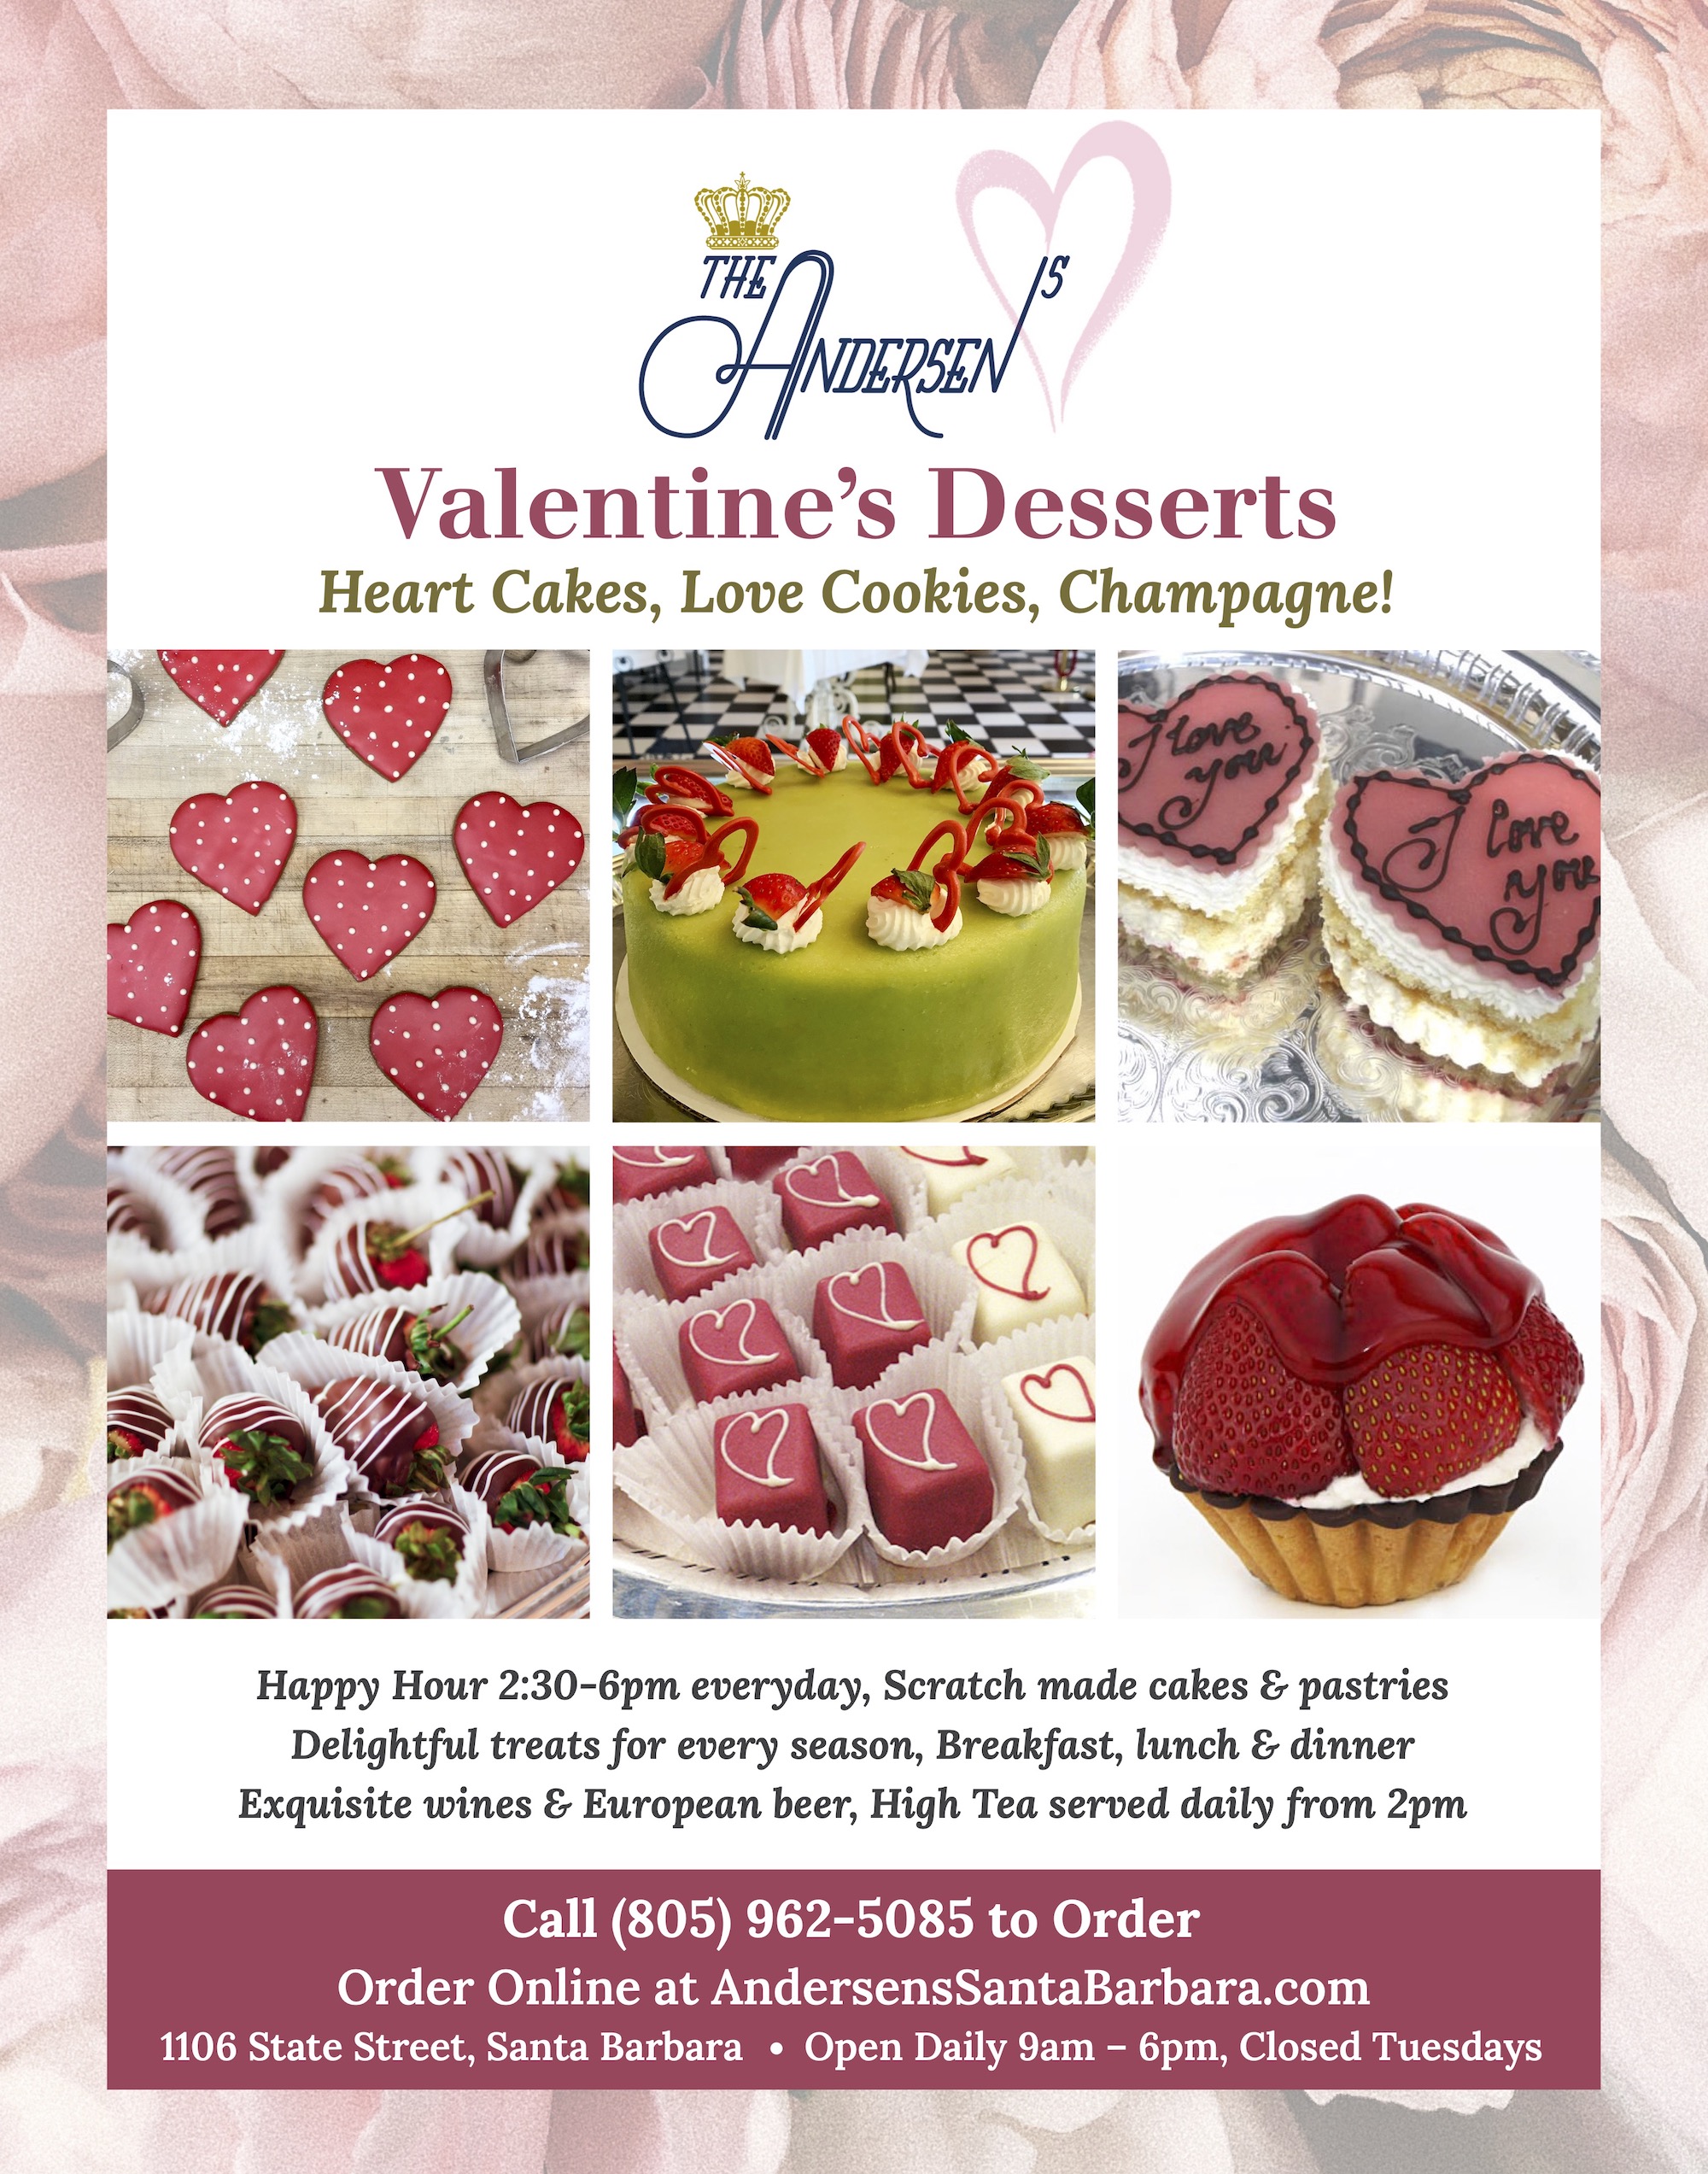 Valentine's Day Desserts